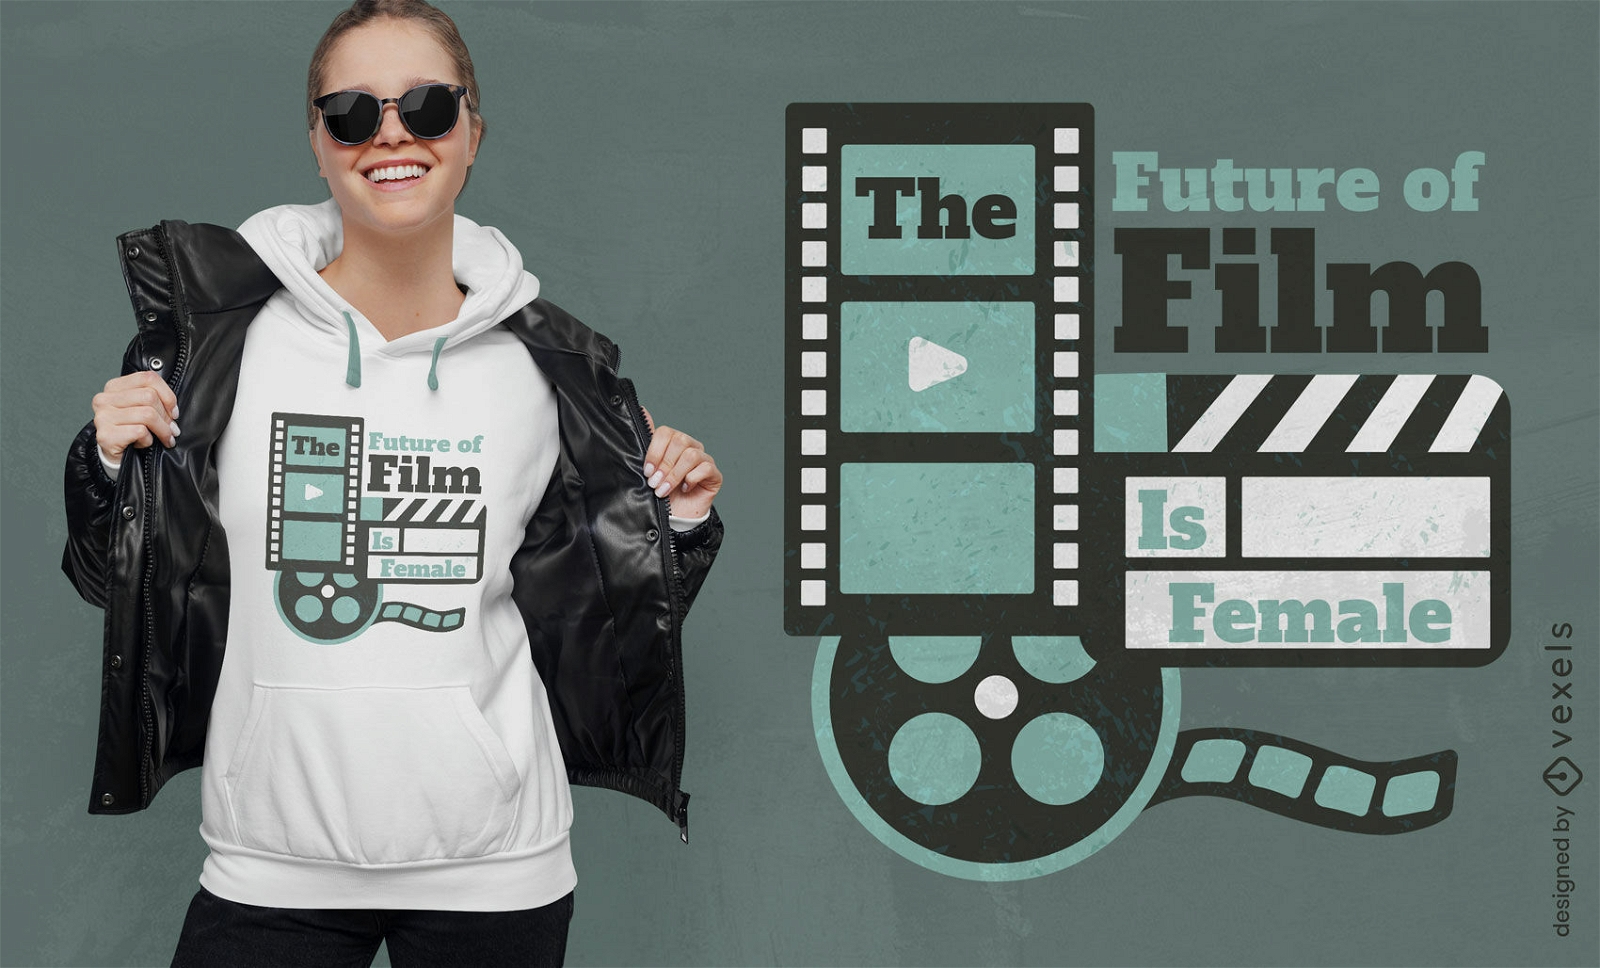 El futuro del cine es el diseño de camisetas con citas femeninas.